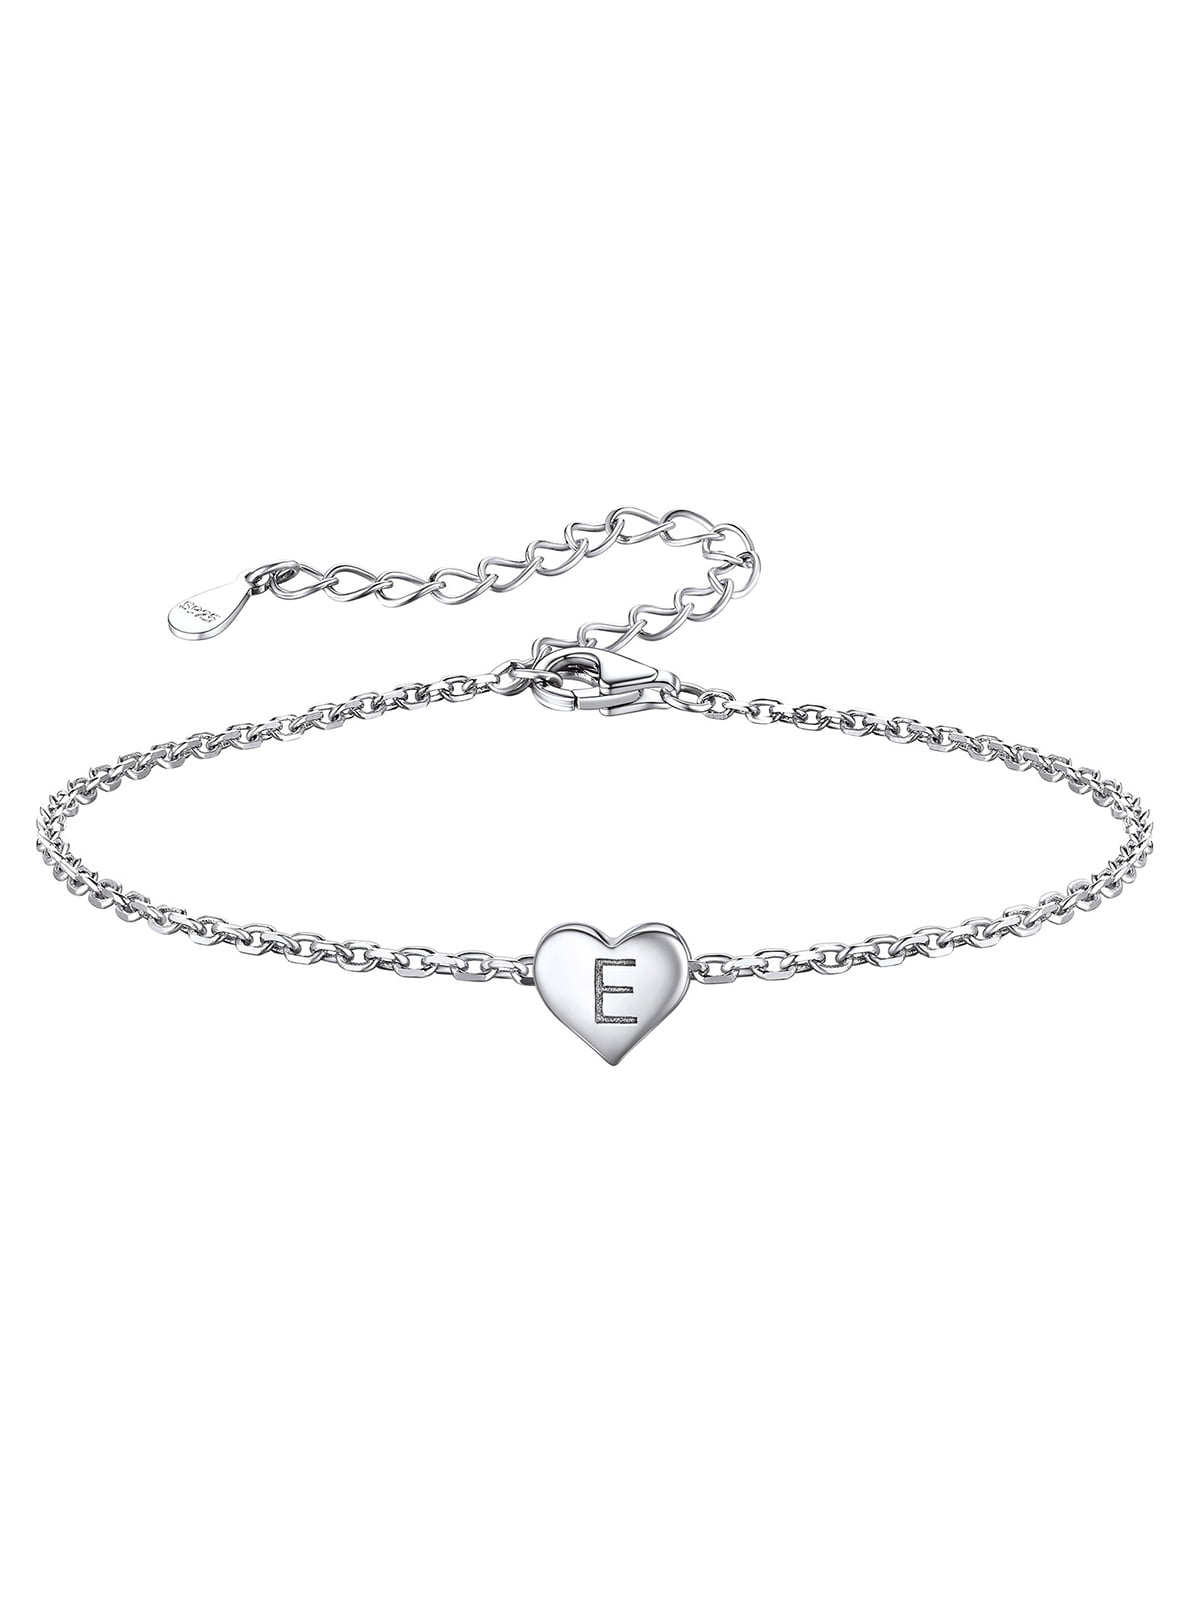 Silvora Women Letter Bracelet Silver S925 Initial Heart Jewelry for  Girlfriends - Letter E Chain Bracelets 